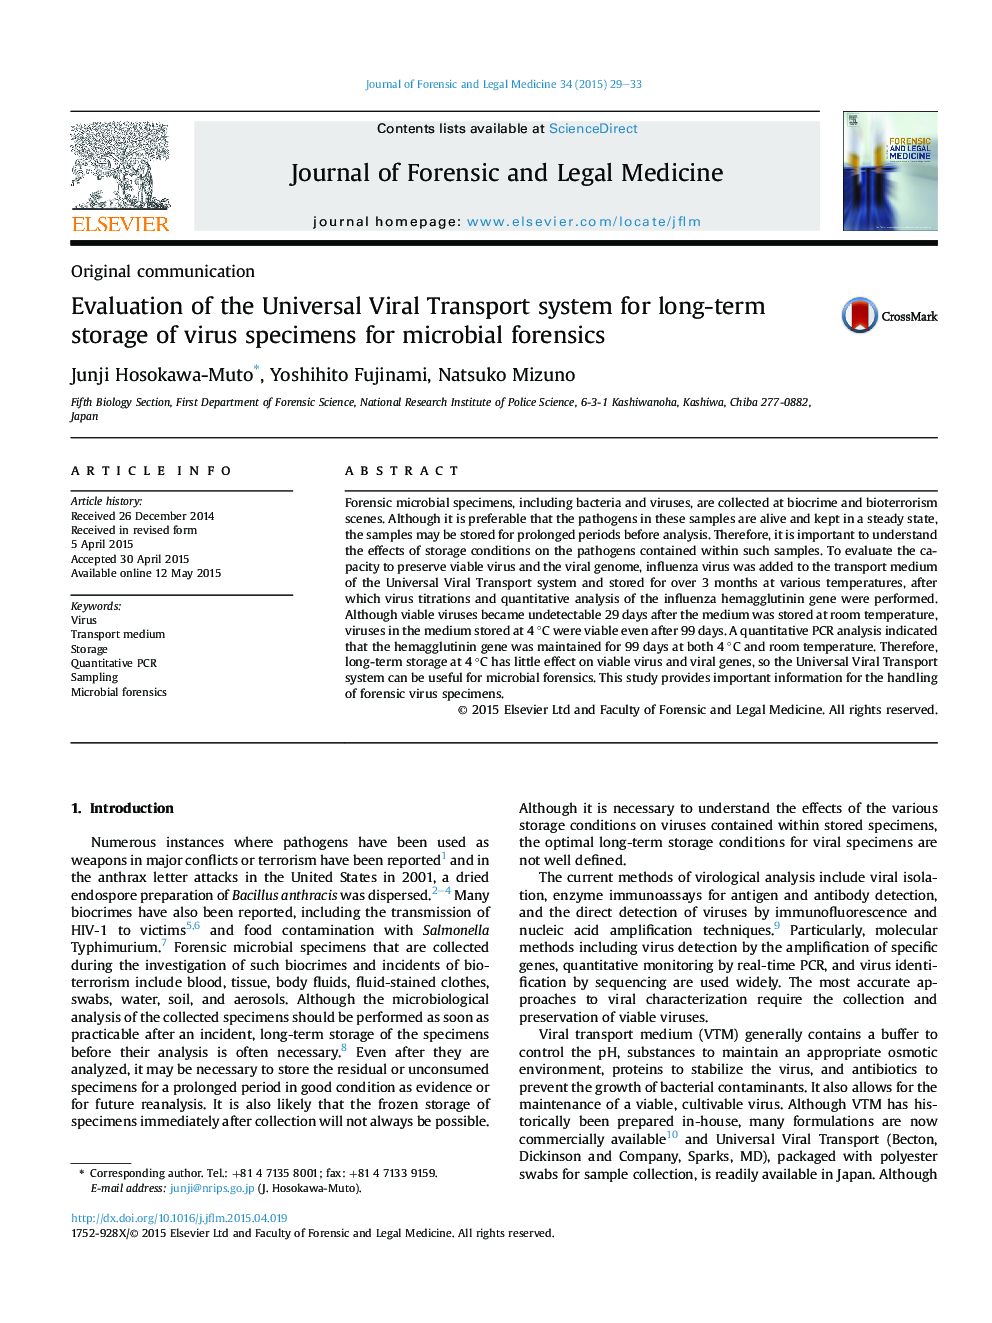 ارزیابی سیستم حمل و نقل جهانی ویروسی برای ذخیره سازی طولانی مدت نمونه های ویروس برای آزمایش های پزشکی قانونی میکروبی